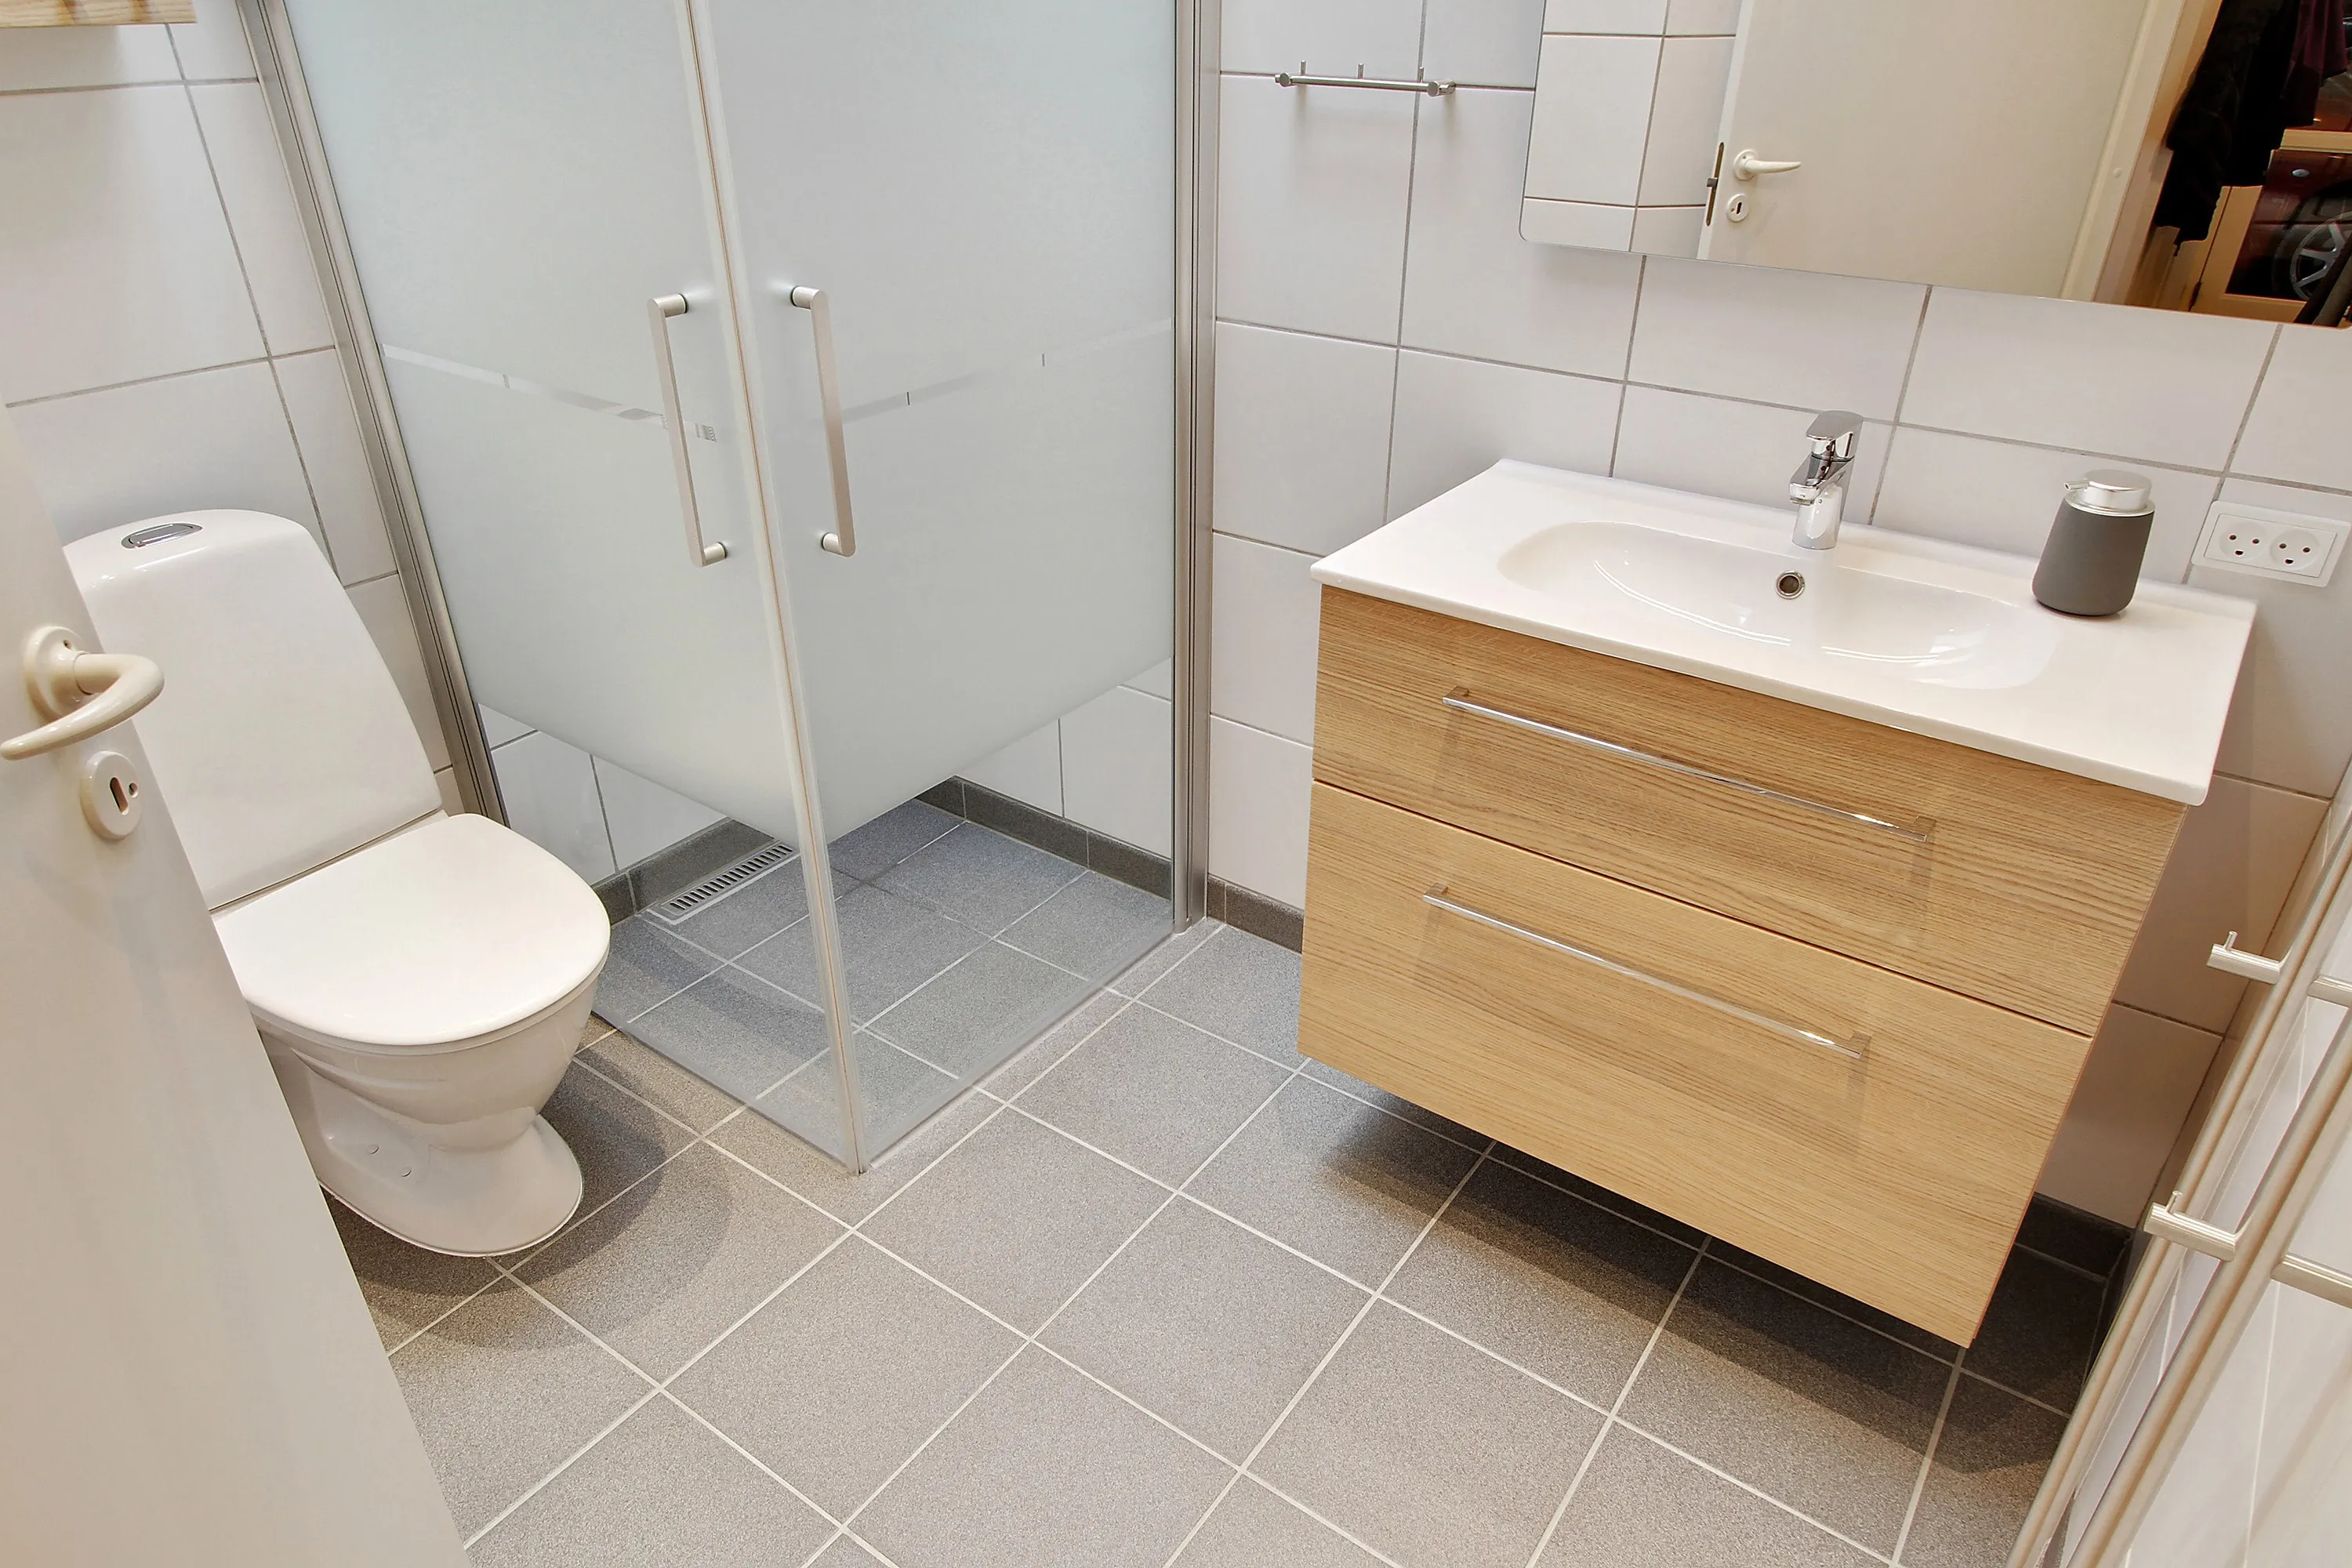 Nyt 5 m2 badeværelse i taastrup nær københavn - Håndværker.dk